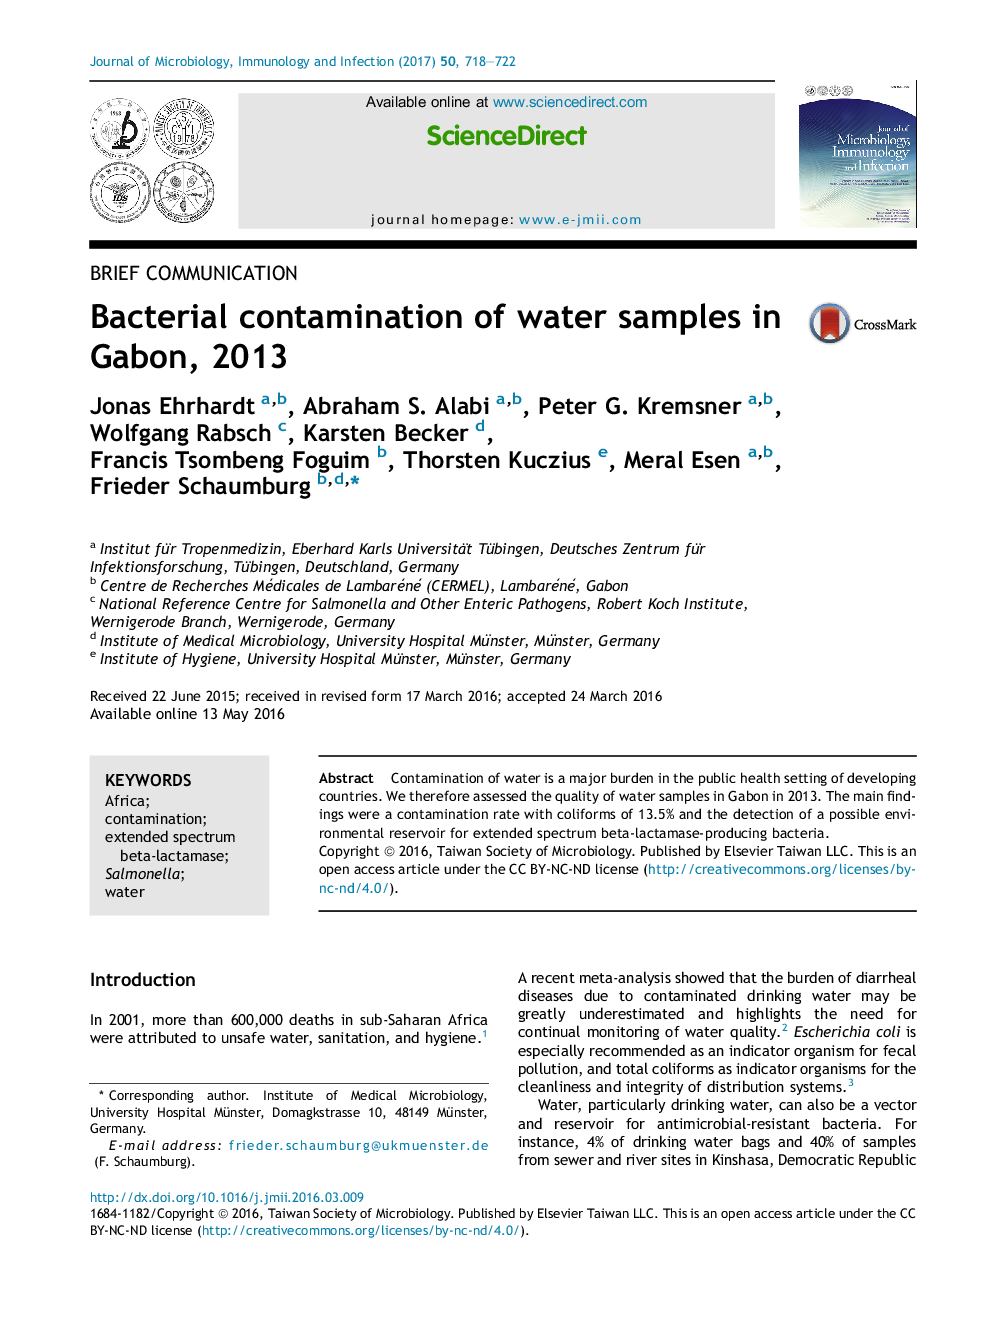 آلودگی باکتریایی نمونه های آب در گابن، 2013 